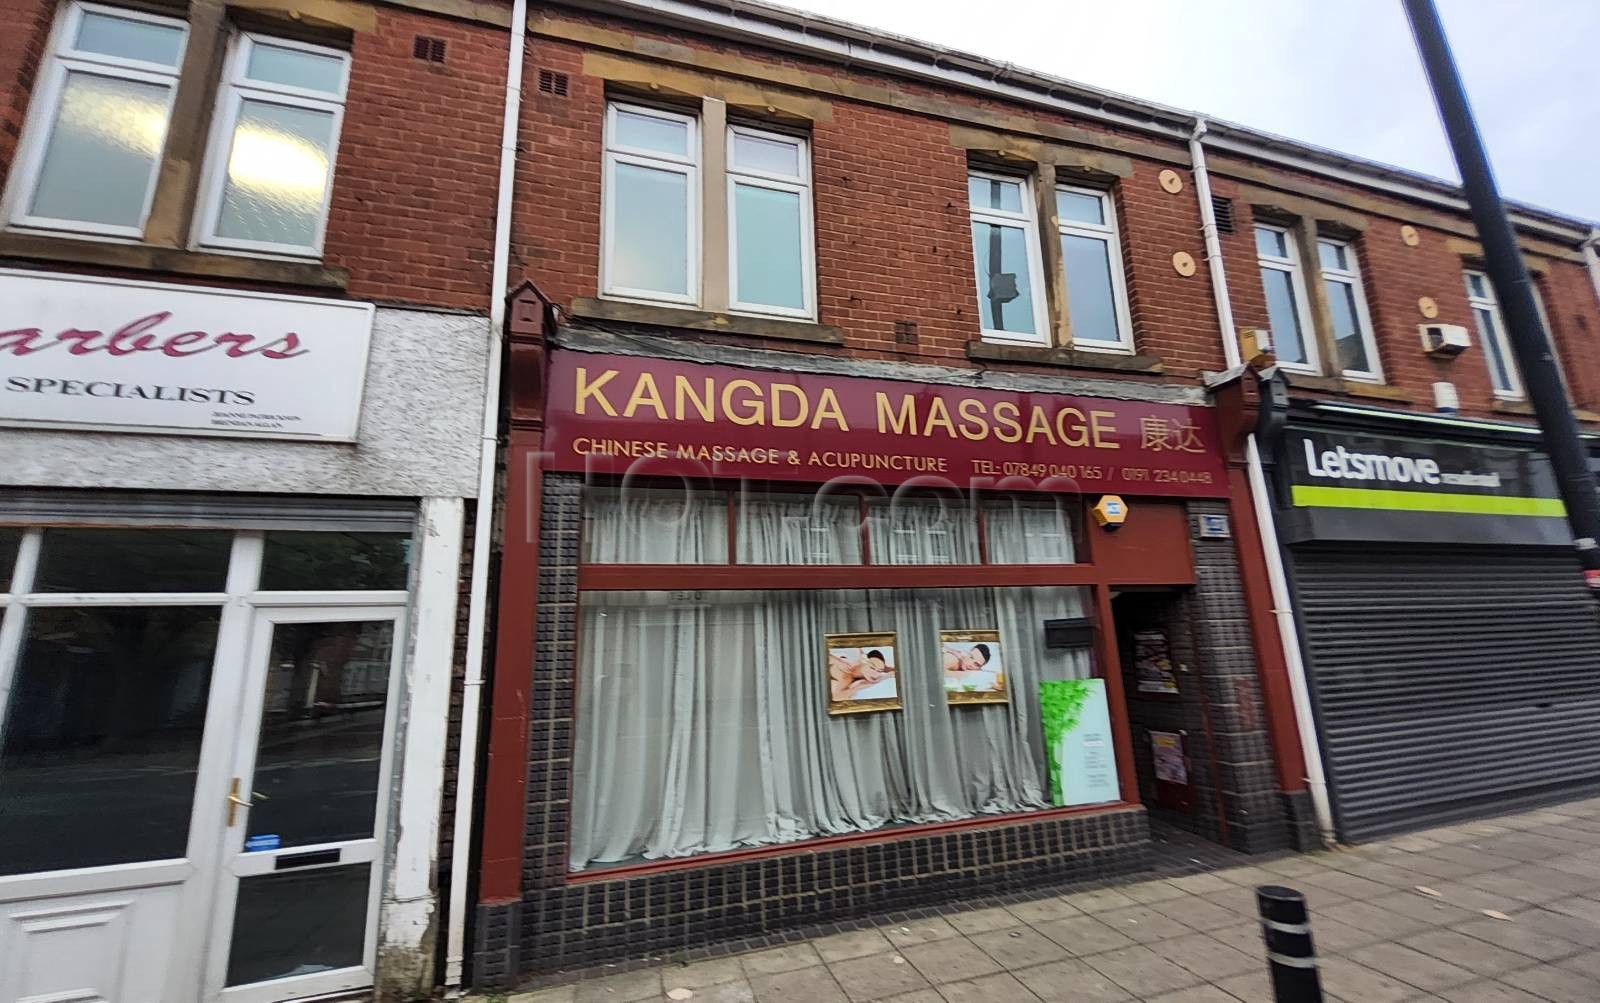 Newcastle upon Tyne, England Kangda Massage